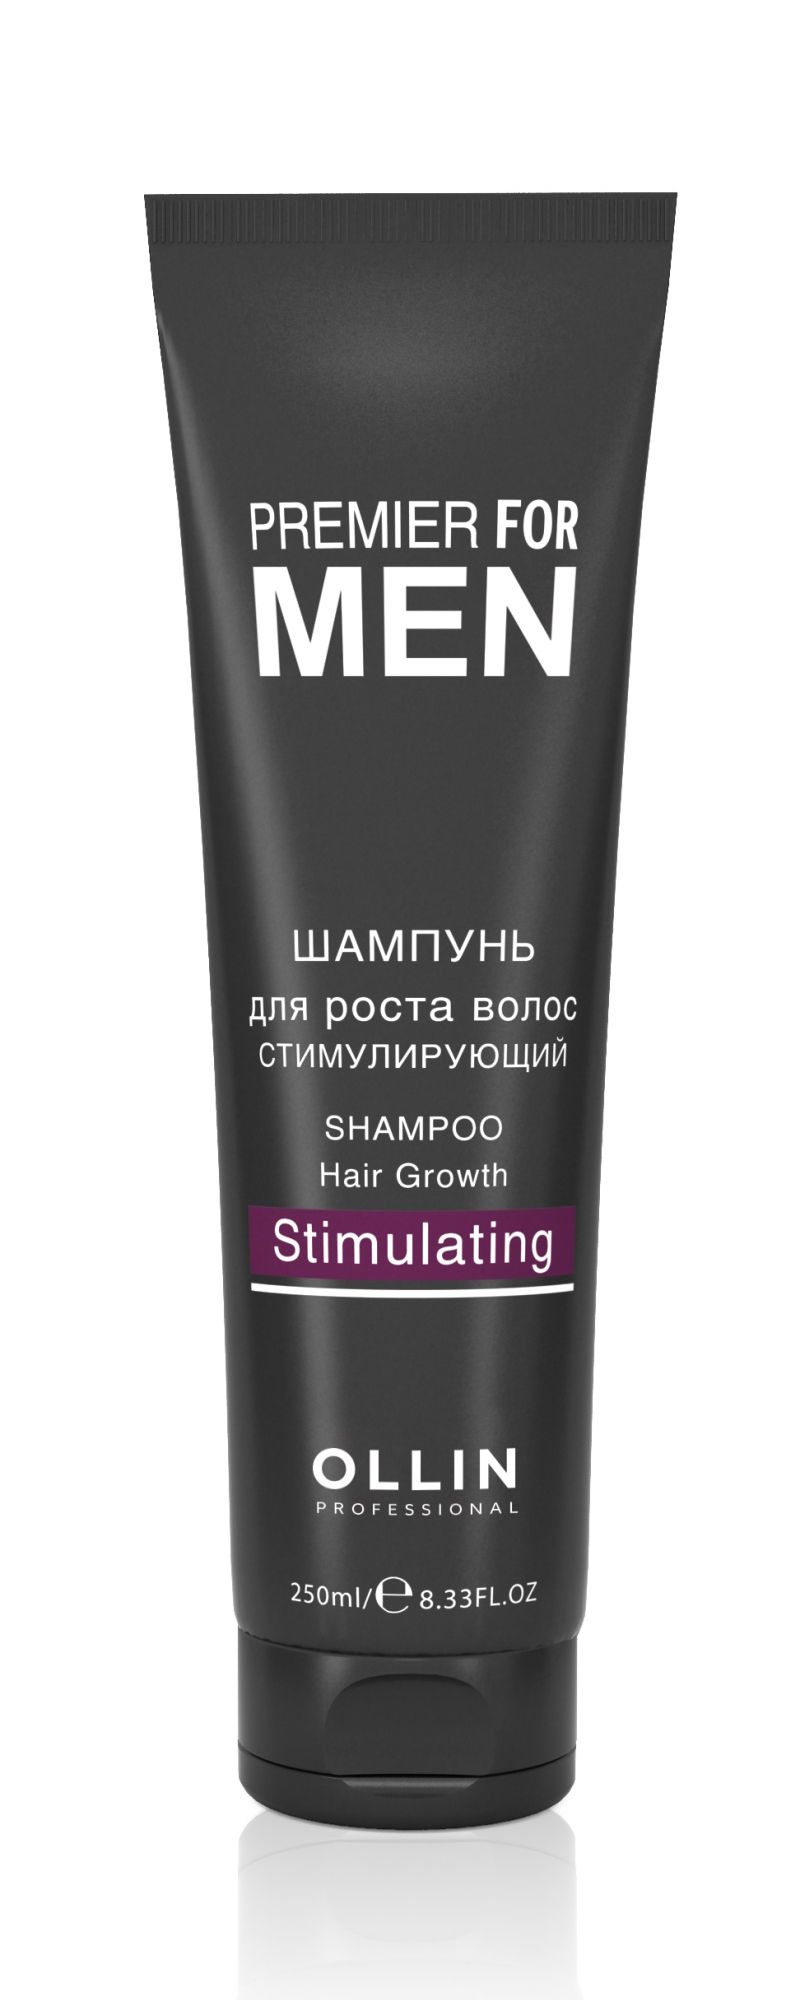 Ollin, Шампунь для роста волос «Стимулирующий» серии «Premier for men», Фото интернет-магазин Премиум-Косметика.РФ